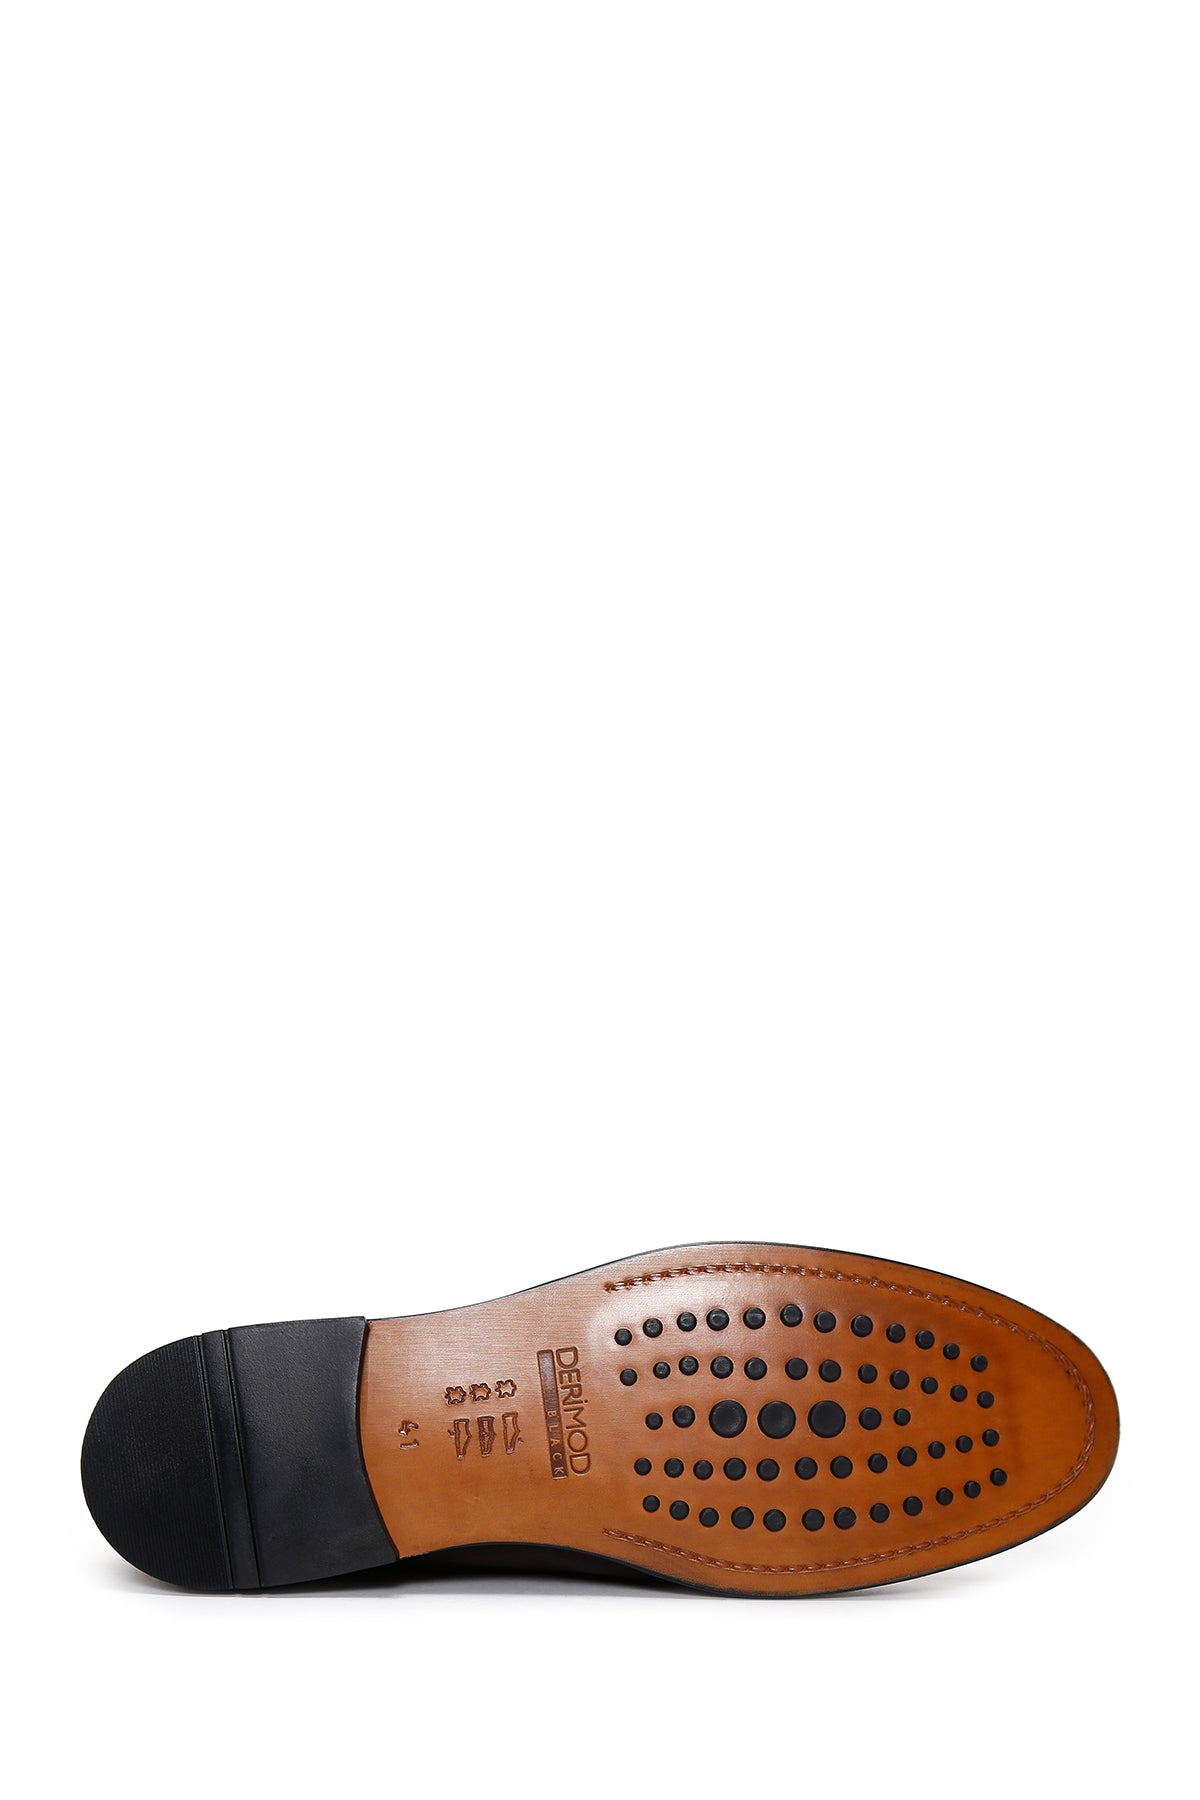 Erkek Kahverengi Bağcıklı Deri Klasik Ayakkabı